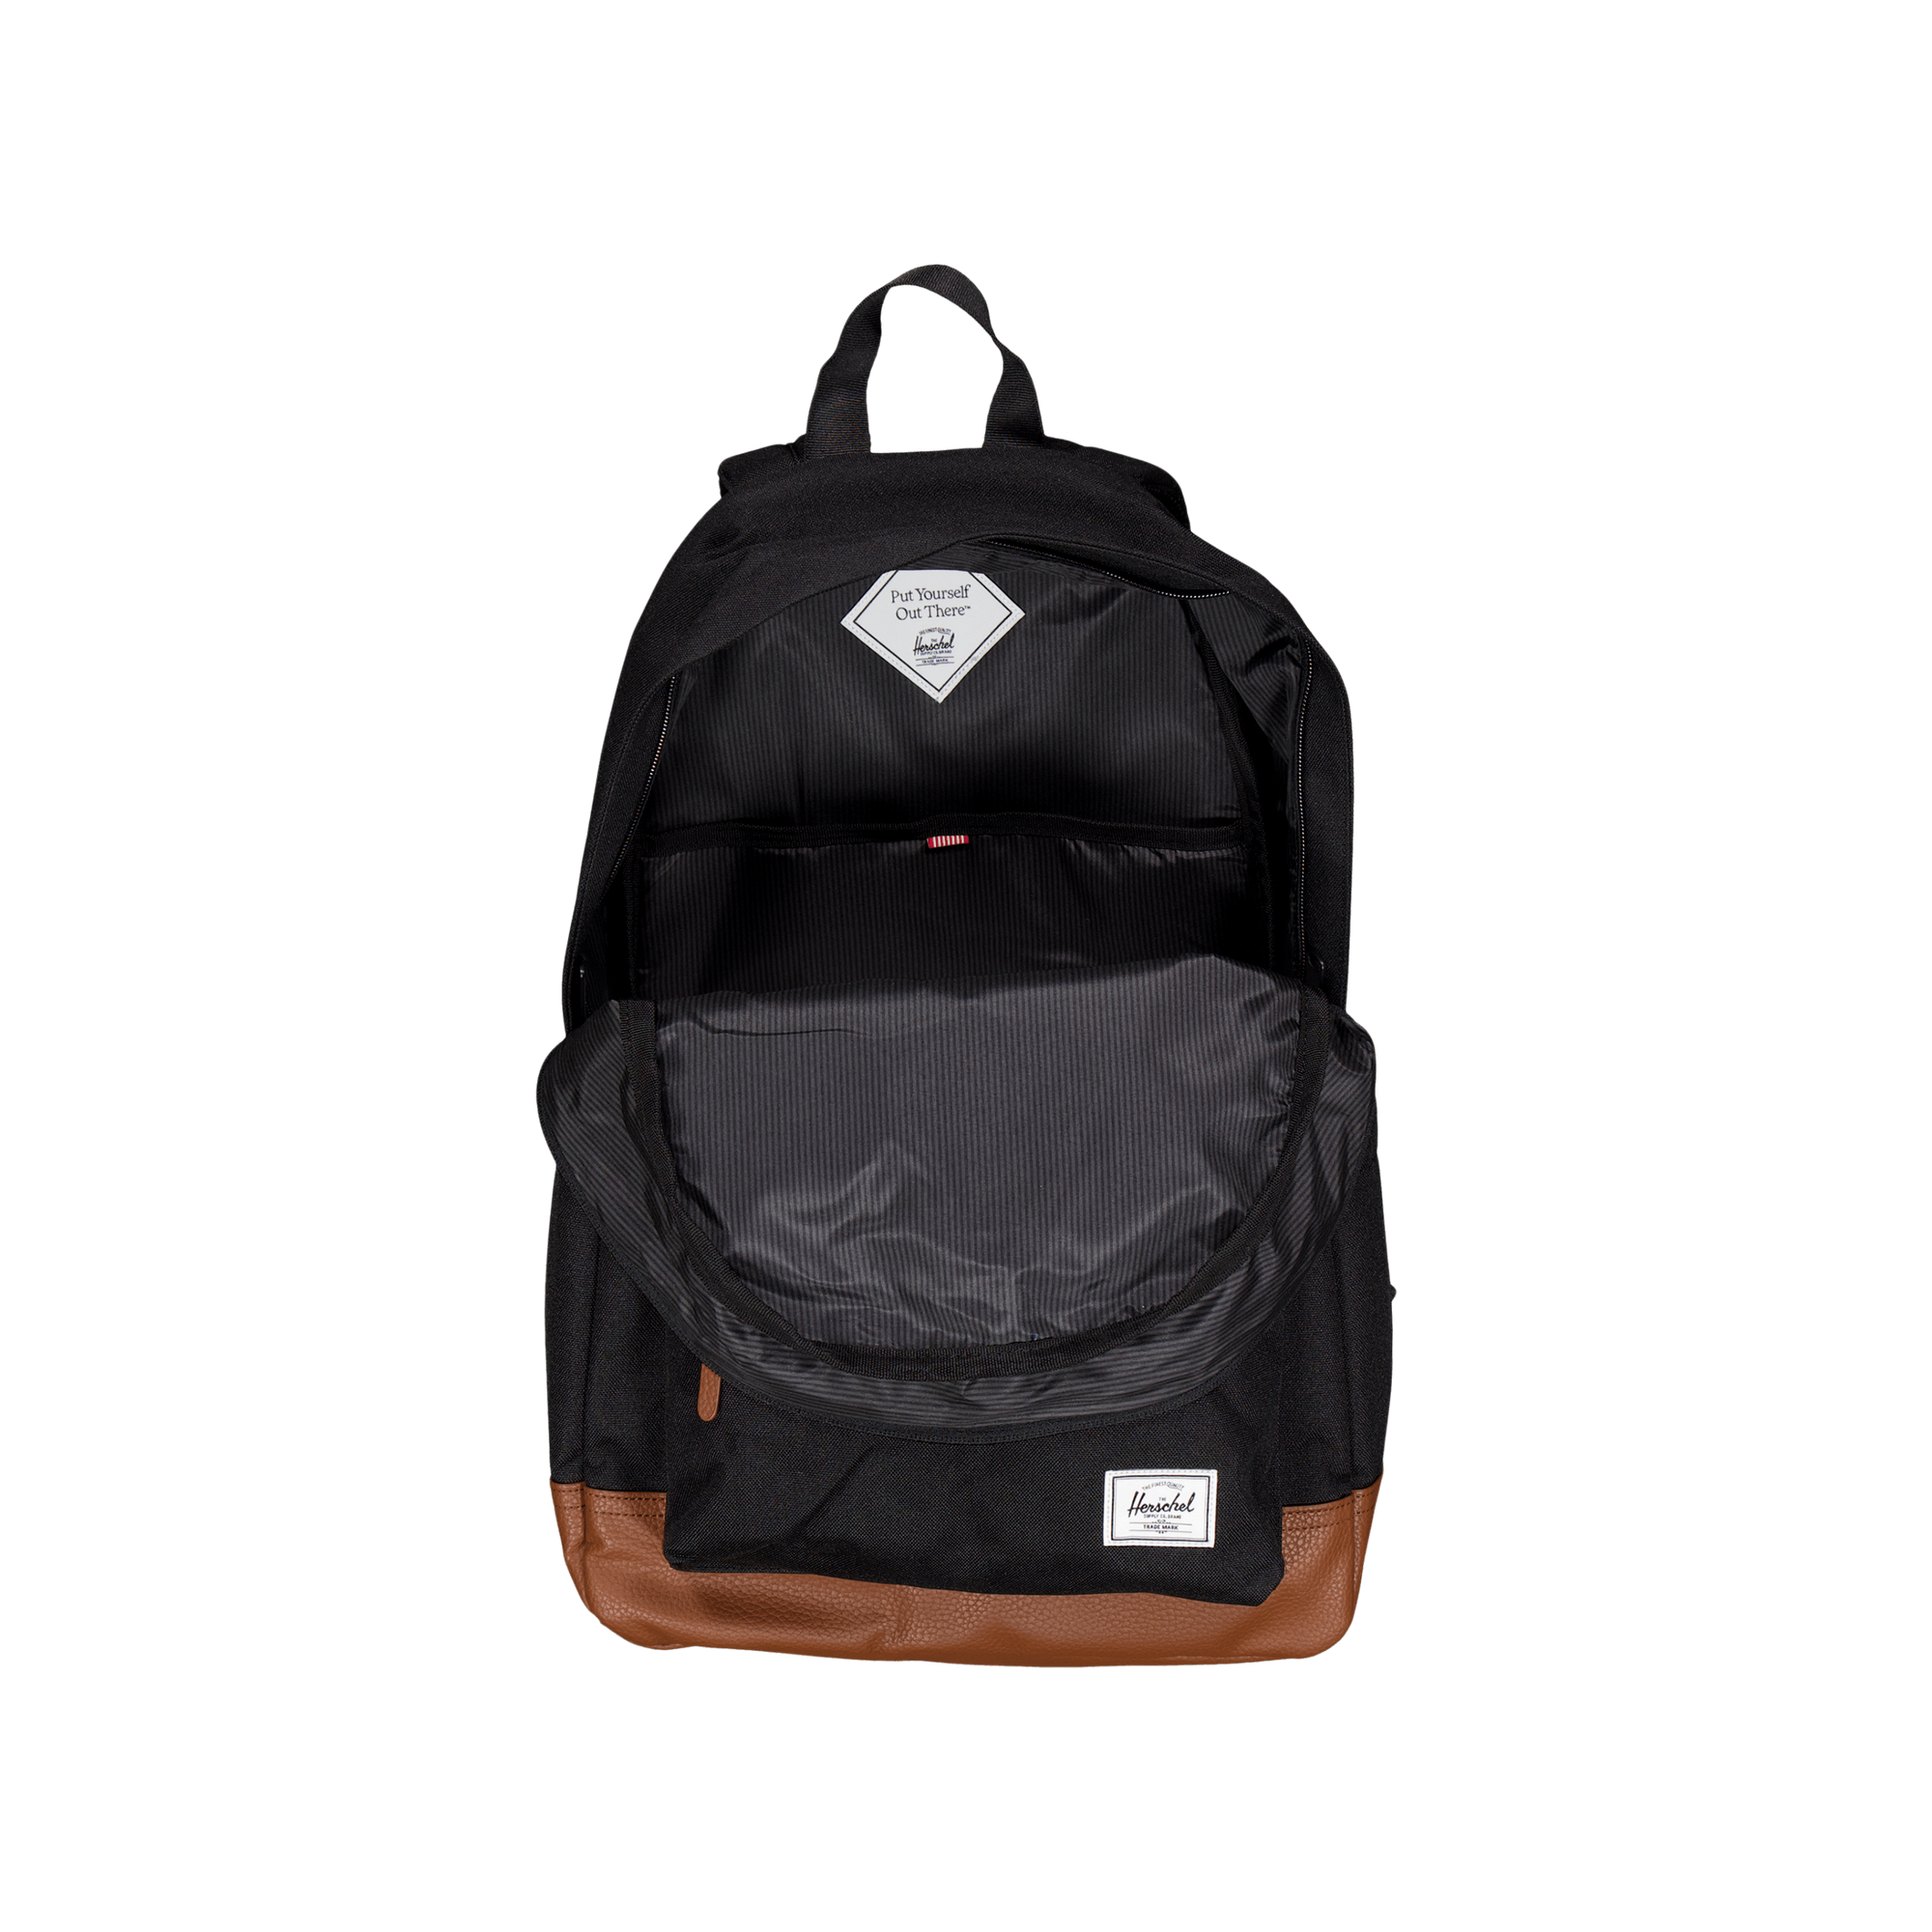 Herschel Heritage Backpack Black/tan